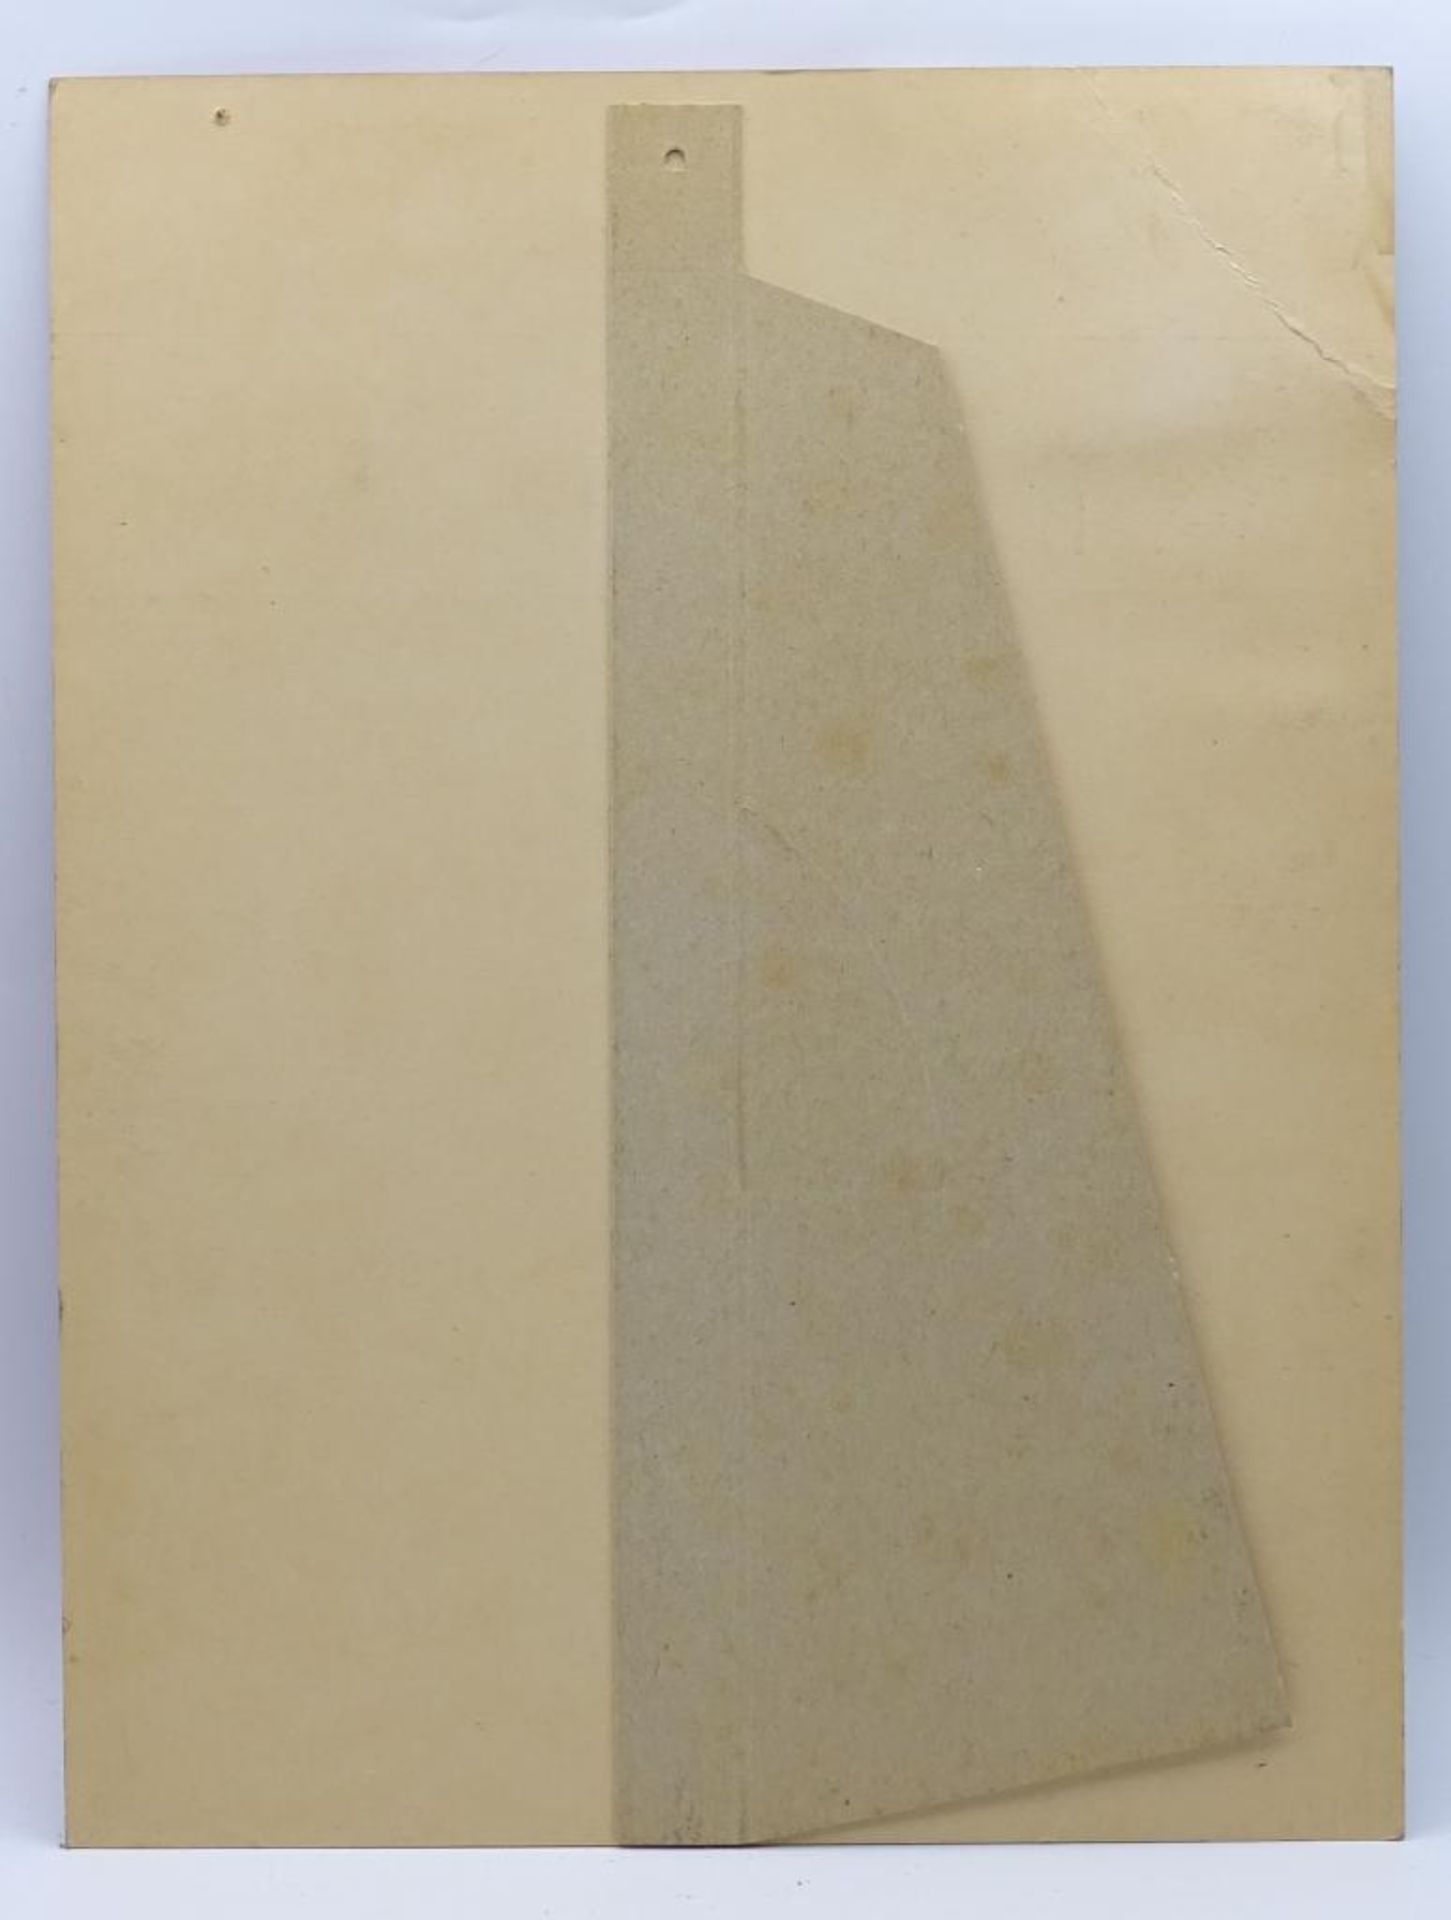 Papp-Tresenaufsteller von 1933 "Die NS Revolution" in echten Fotos, diese liegen bei den 3 1/2 Pf. - Bild 2 aus 2